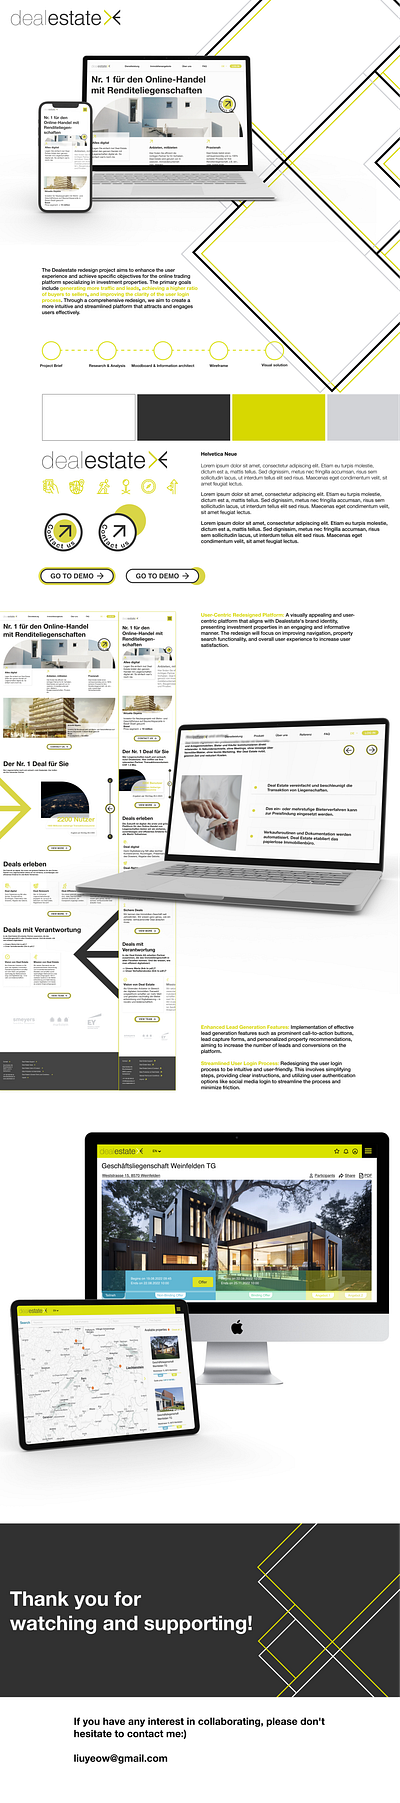 Redesign_Online property trading platfom redesign ui ux webdesign